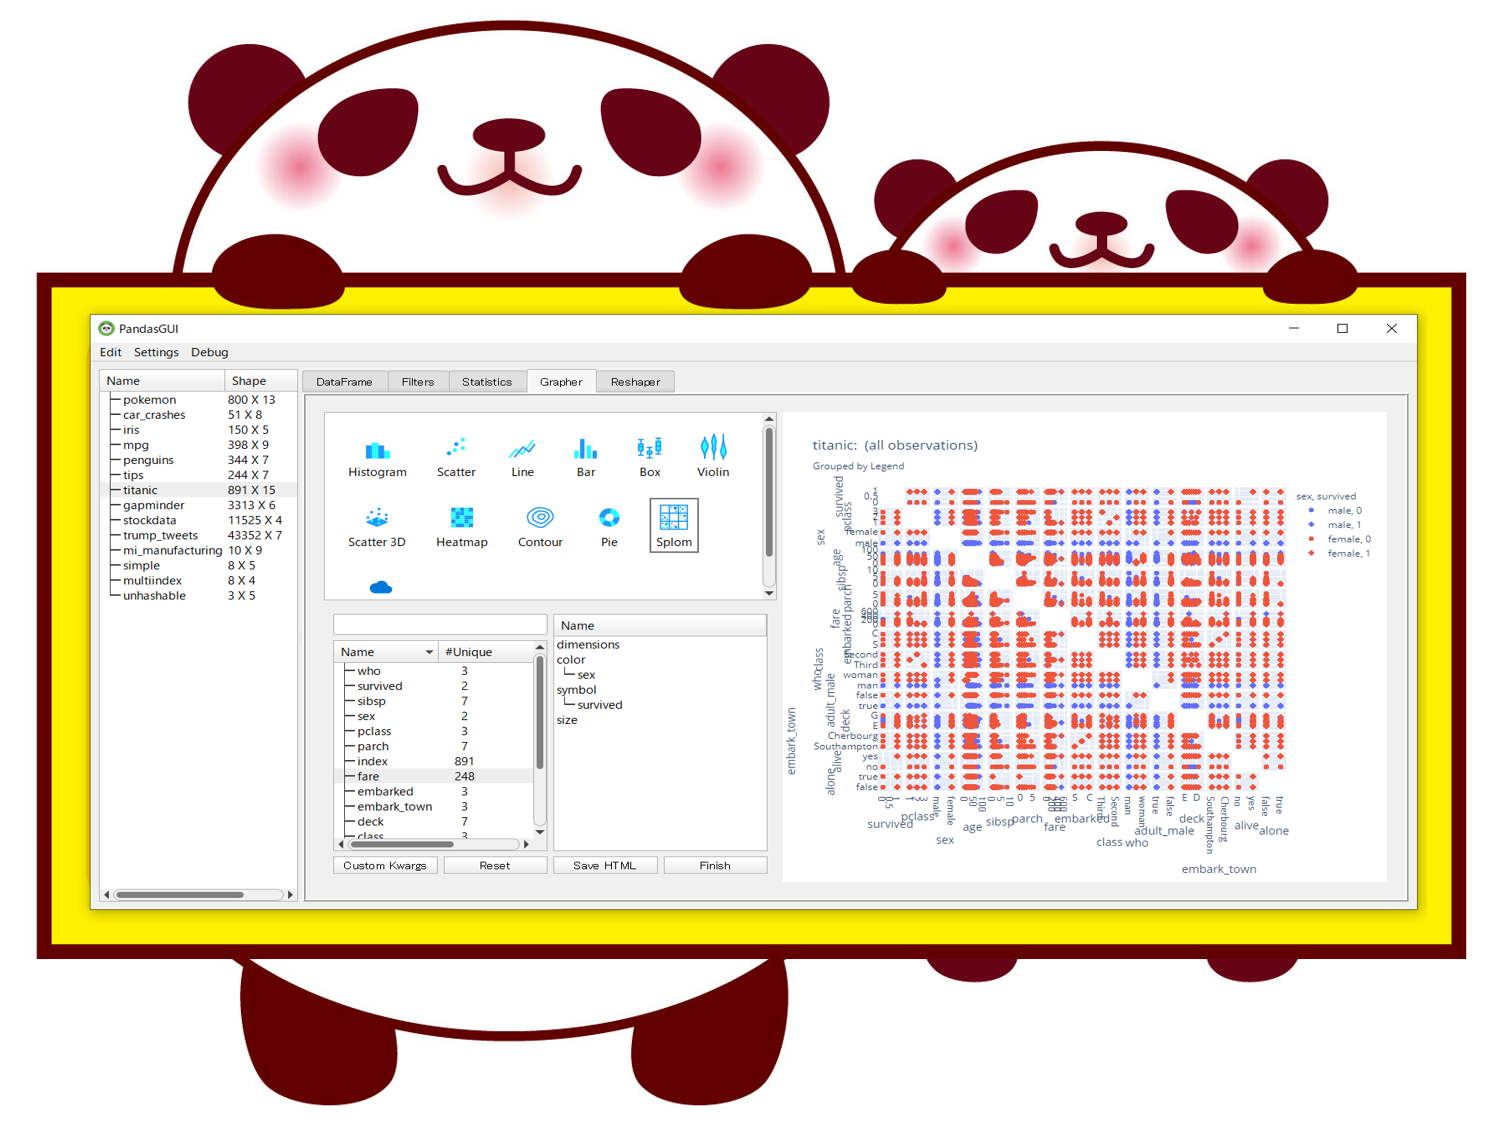 Python PandasGUI（ノーコードEDA）で<br>Excelっぽい感じでグラフィカルにEDA（探索的データ分析）